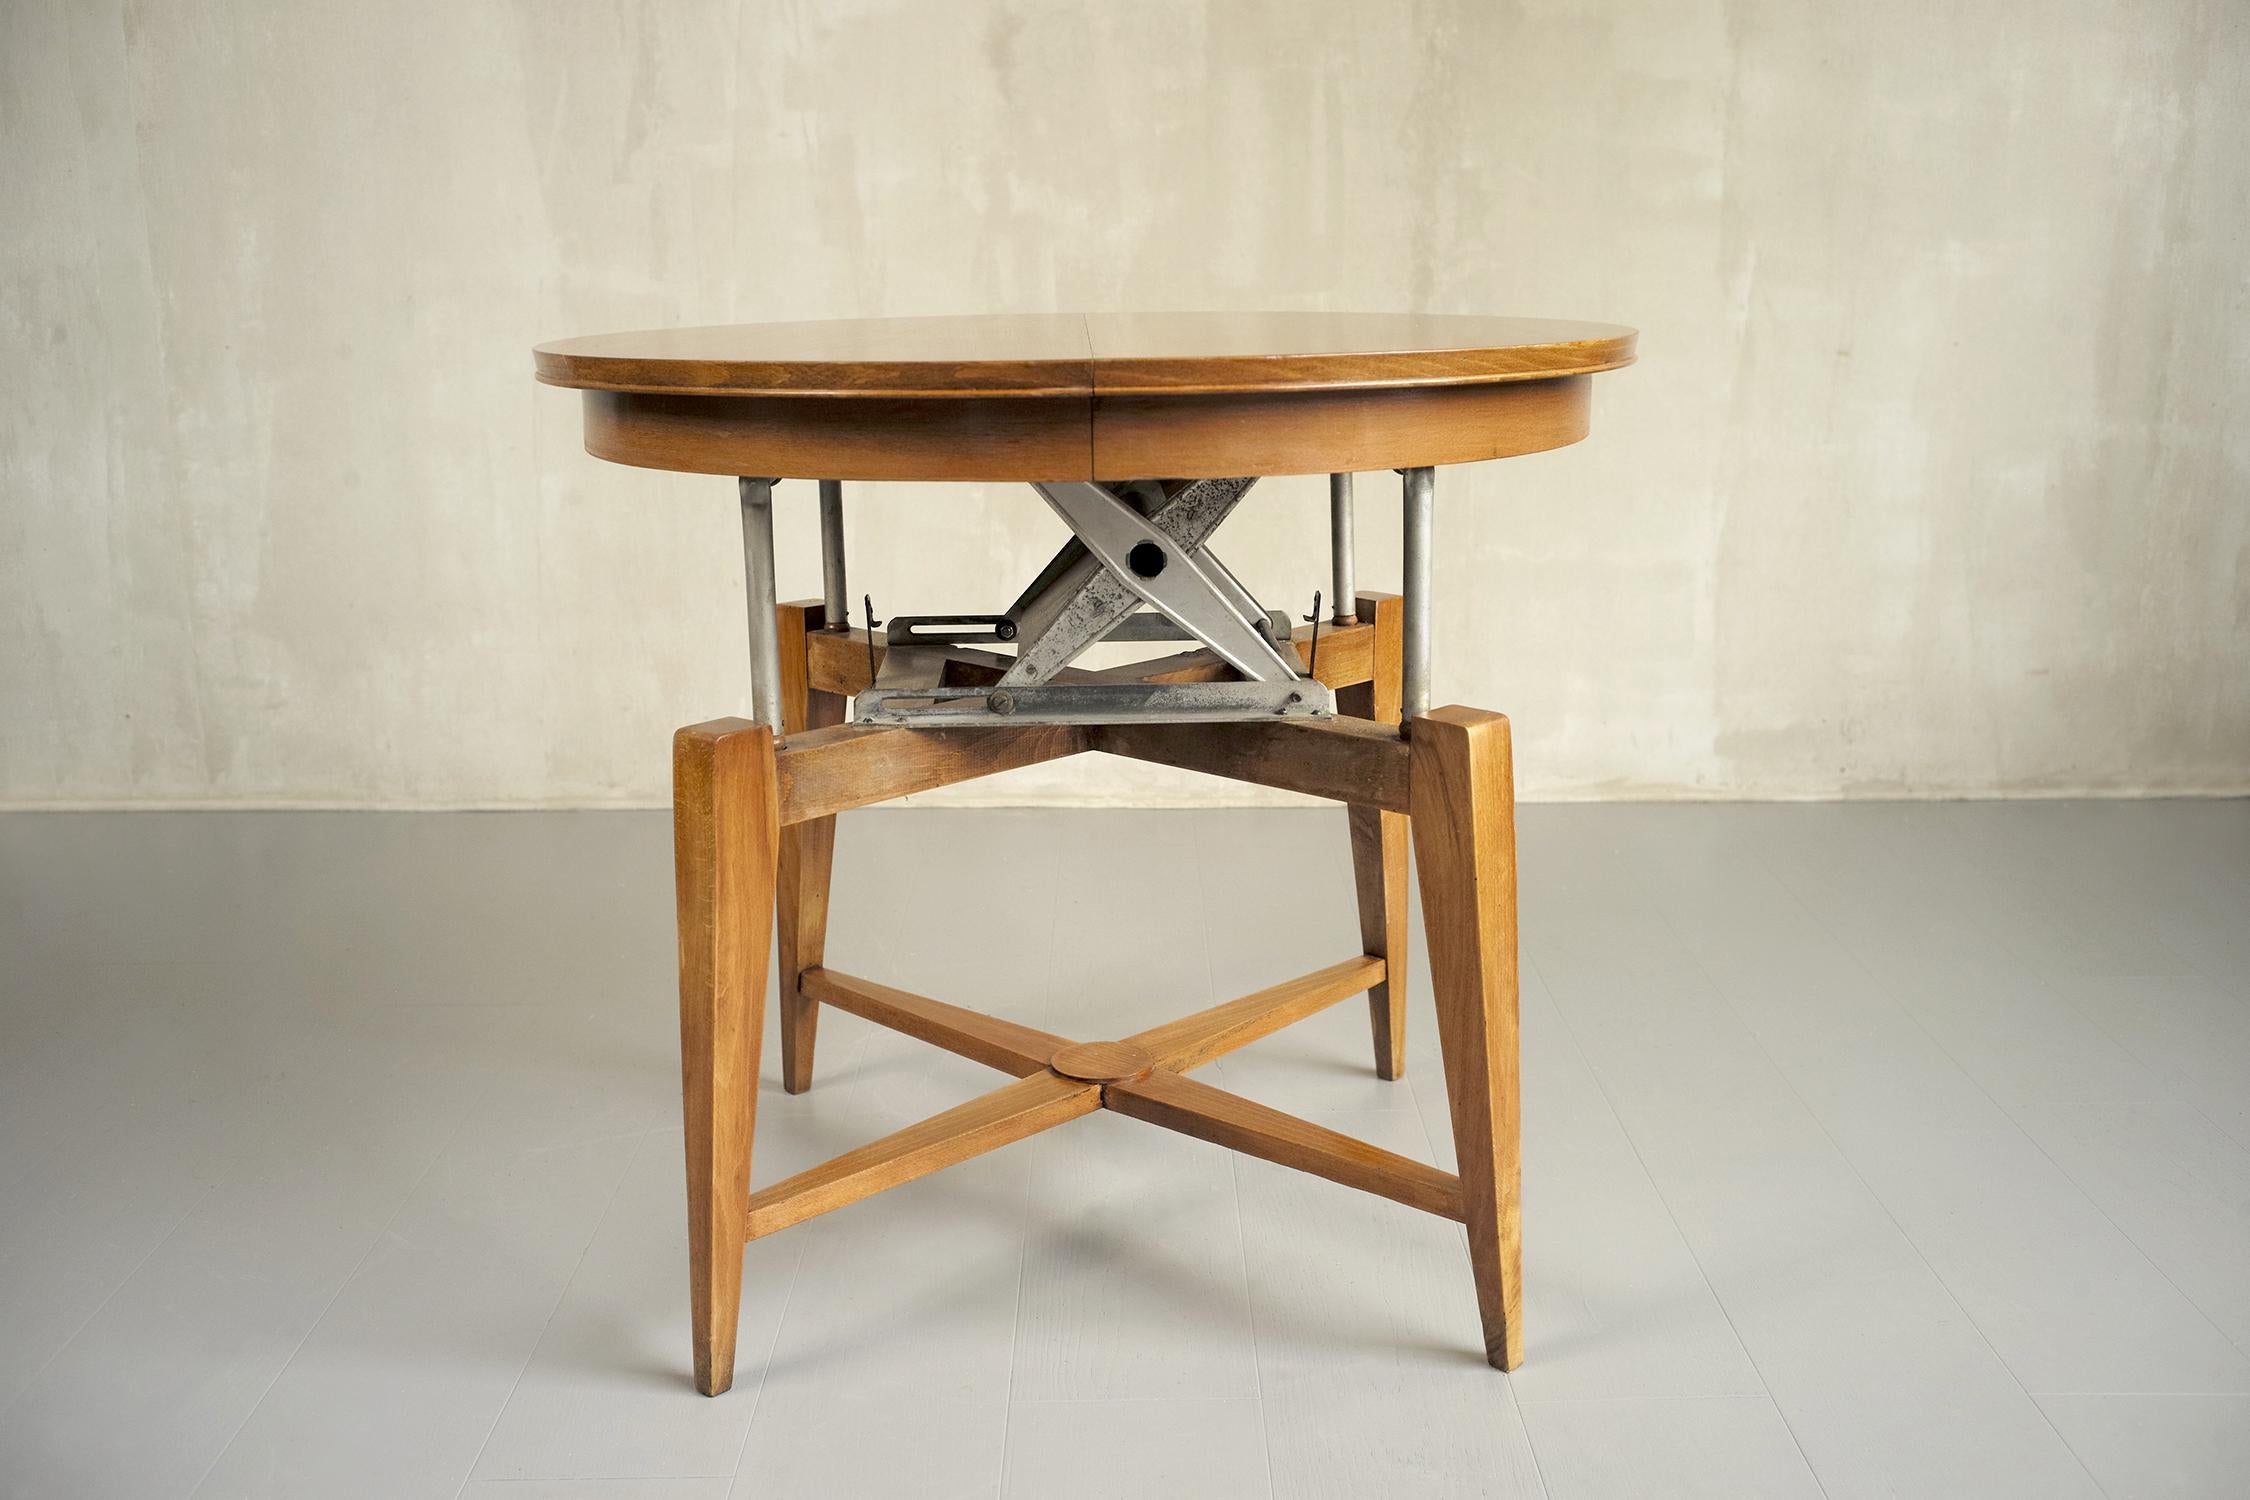 Table basse avec mécanisme en bois de cerisier, France 1950. Un système de pantographe permet de monter le plateau, qui se transforme alors en table à manger. Avec son extension, elle peut accueillir 4 à 6 personnes. Très bon état.